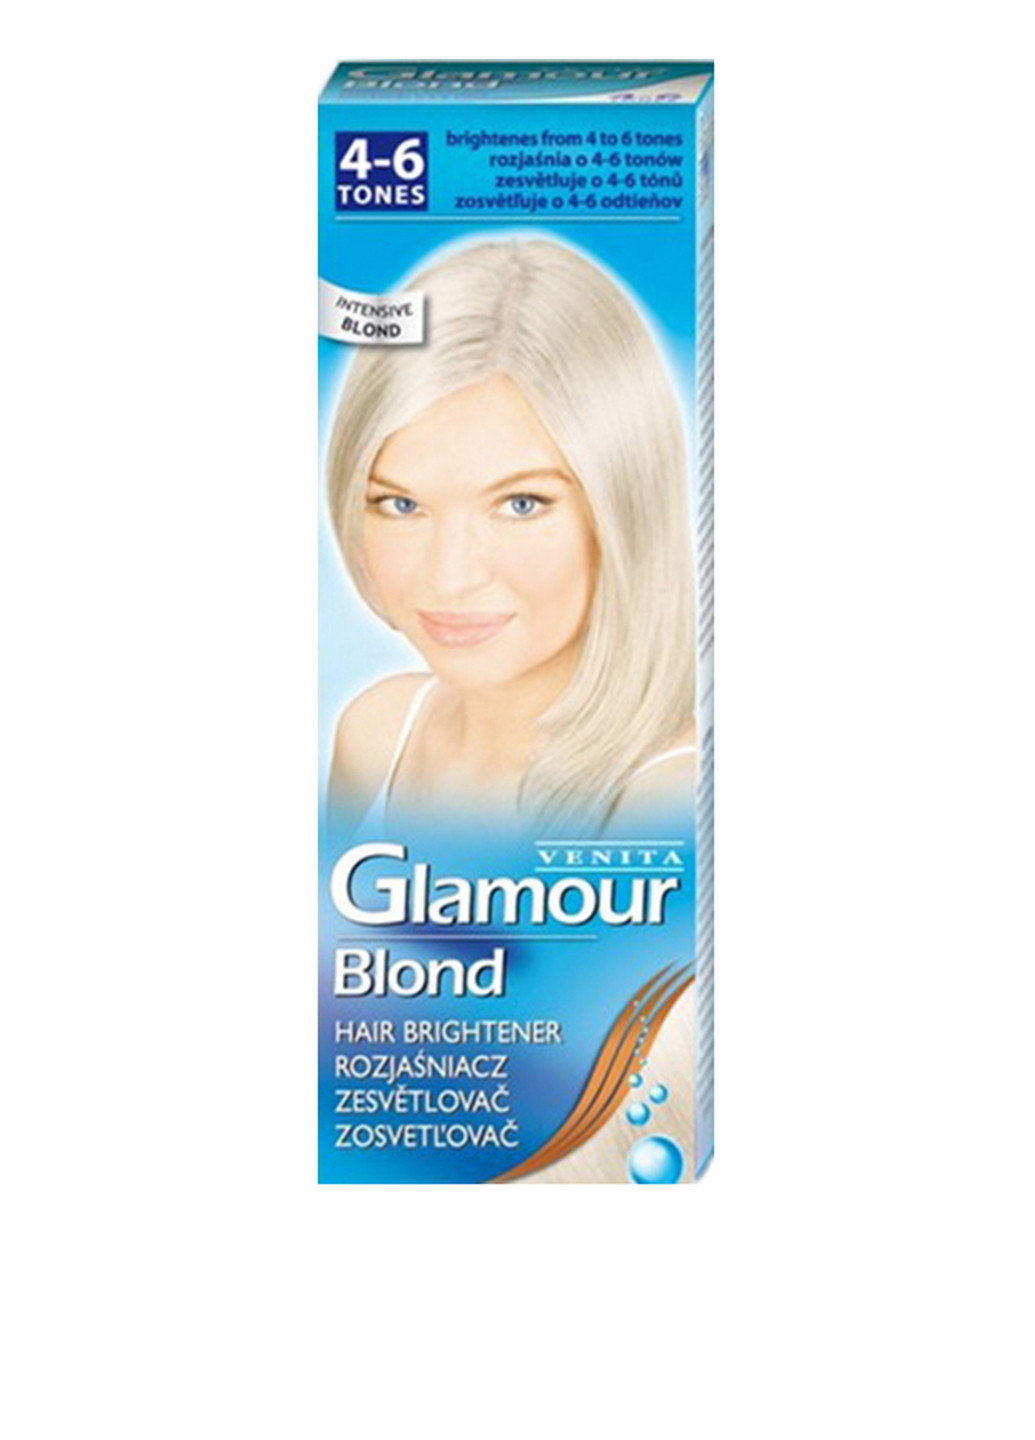 Освітлювач для волосся Glamour Blond (2 од.), 50 г + 50 мл Venita (162947650)